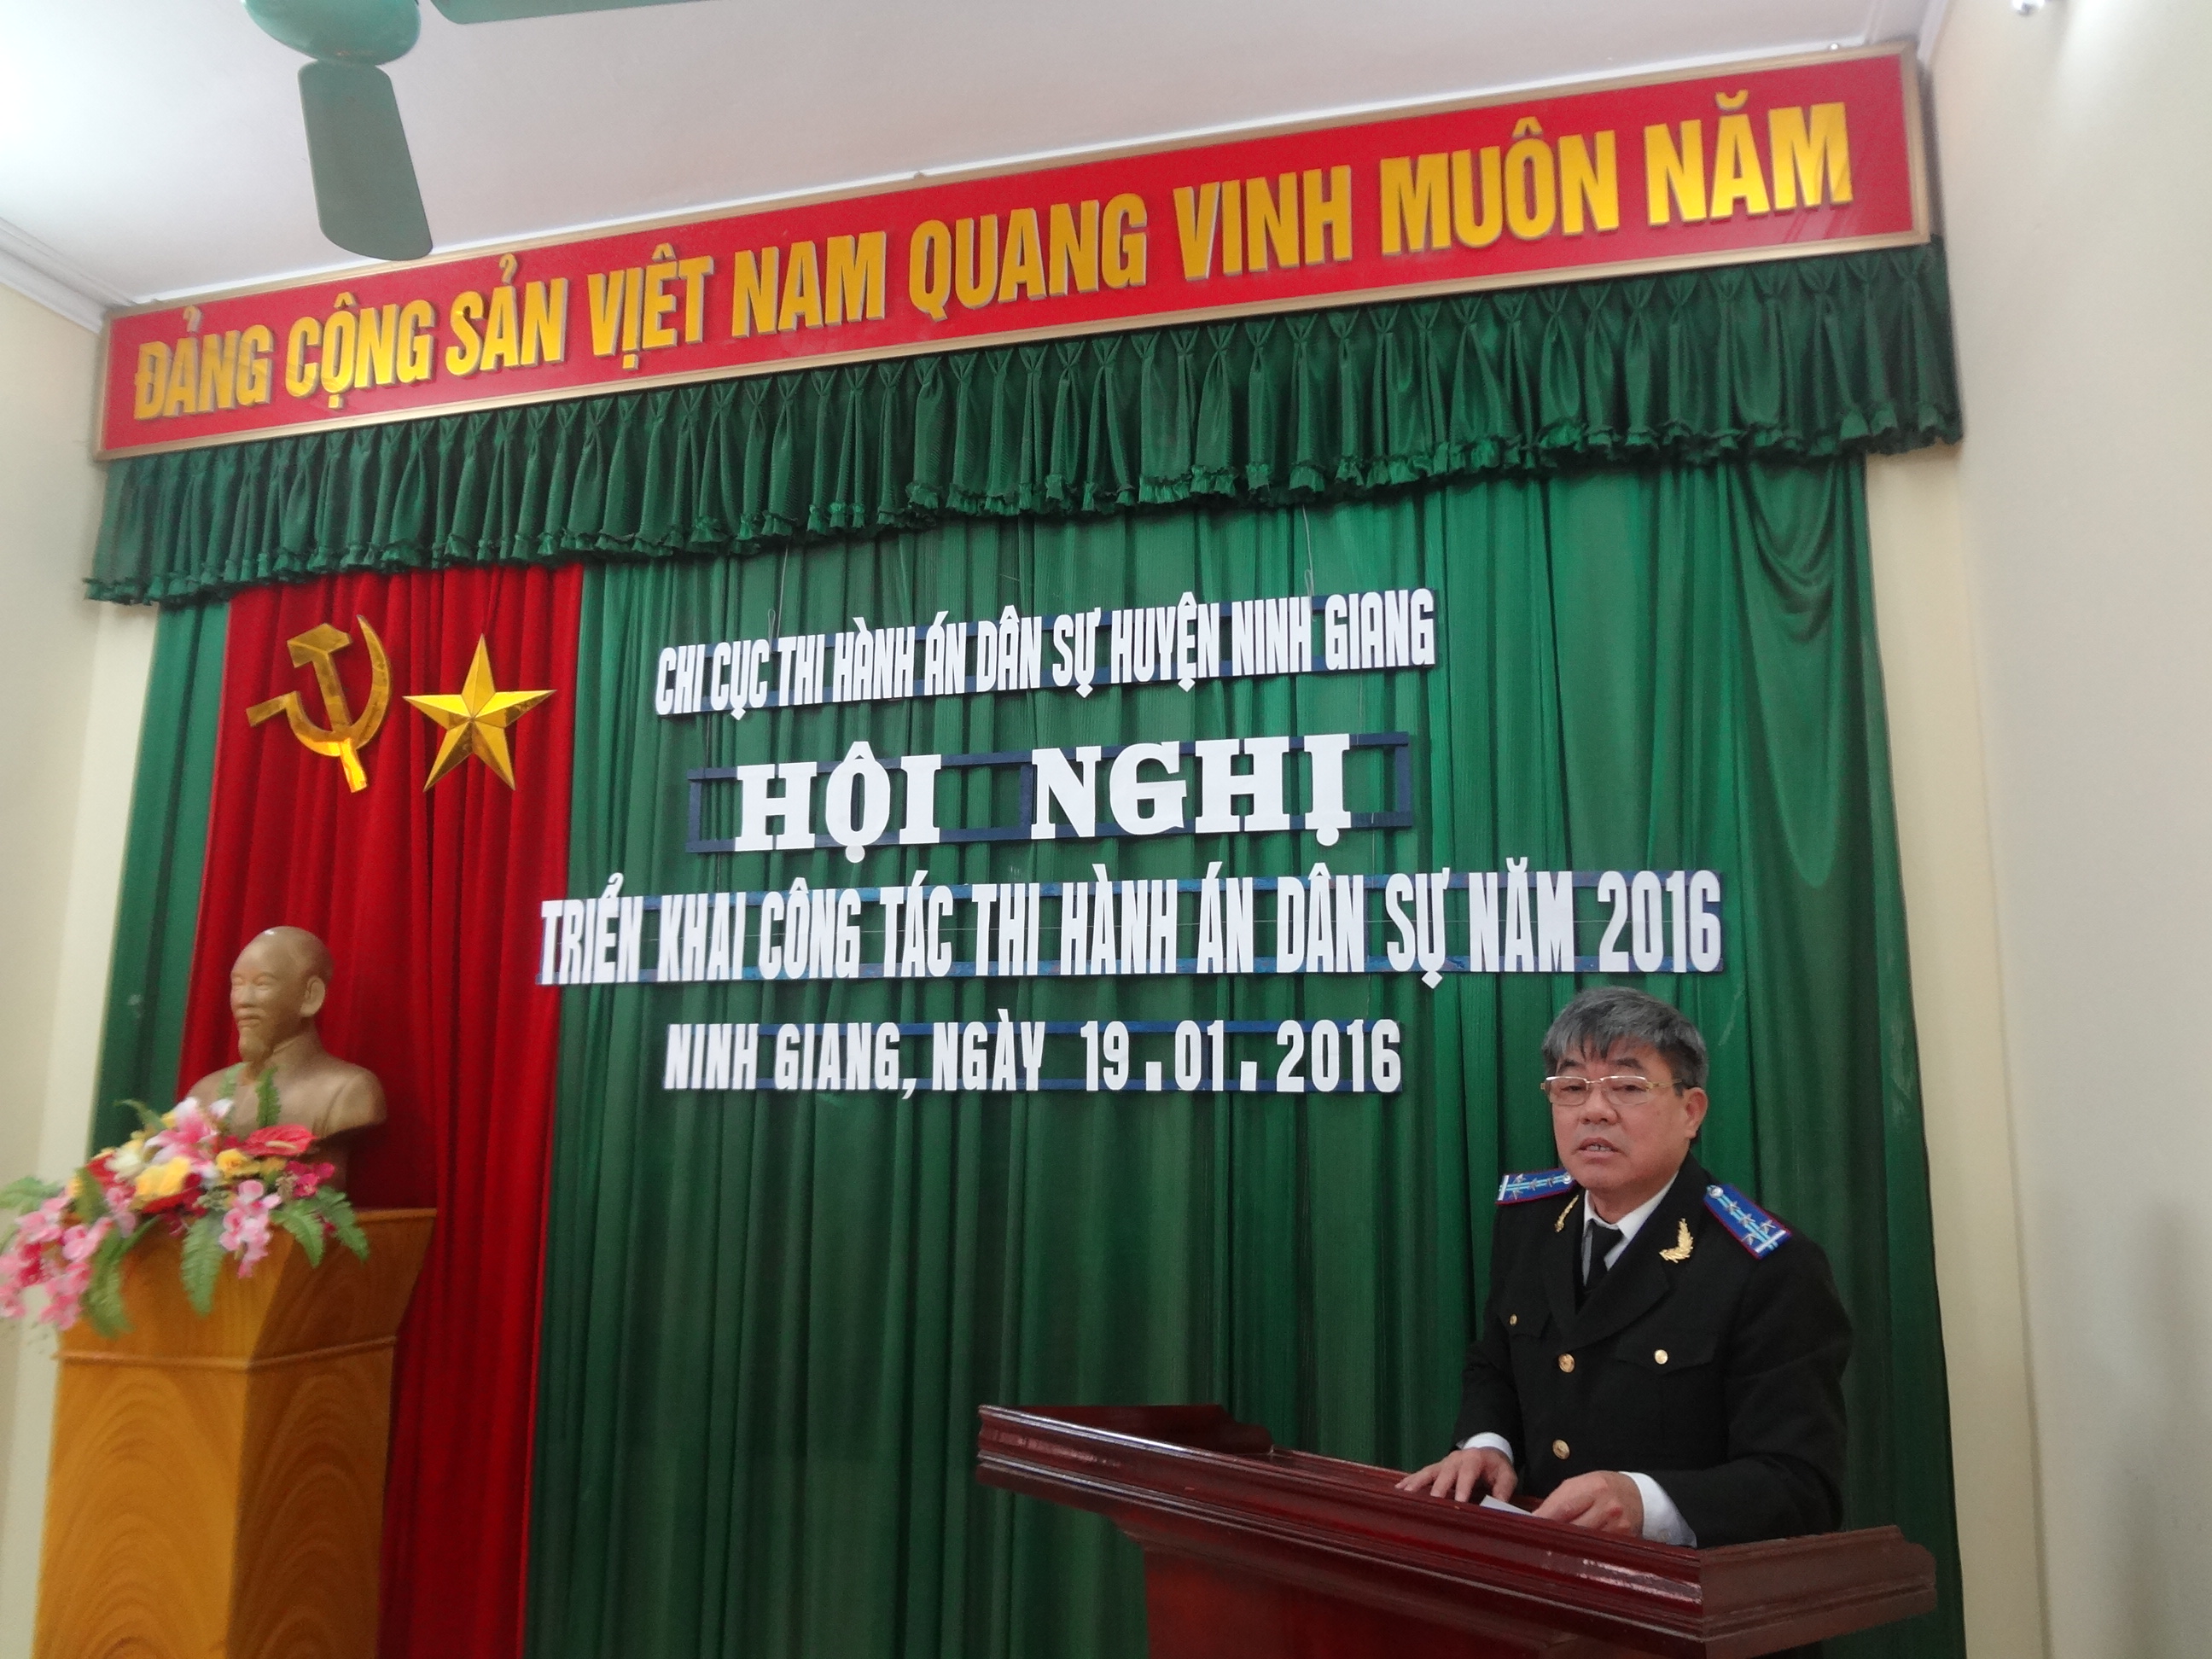 Chi cục Thi hành án dân sự huyện Ninh Giang tổ chức Hội nghị triển khai năm 2016